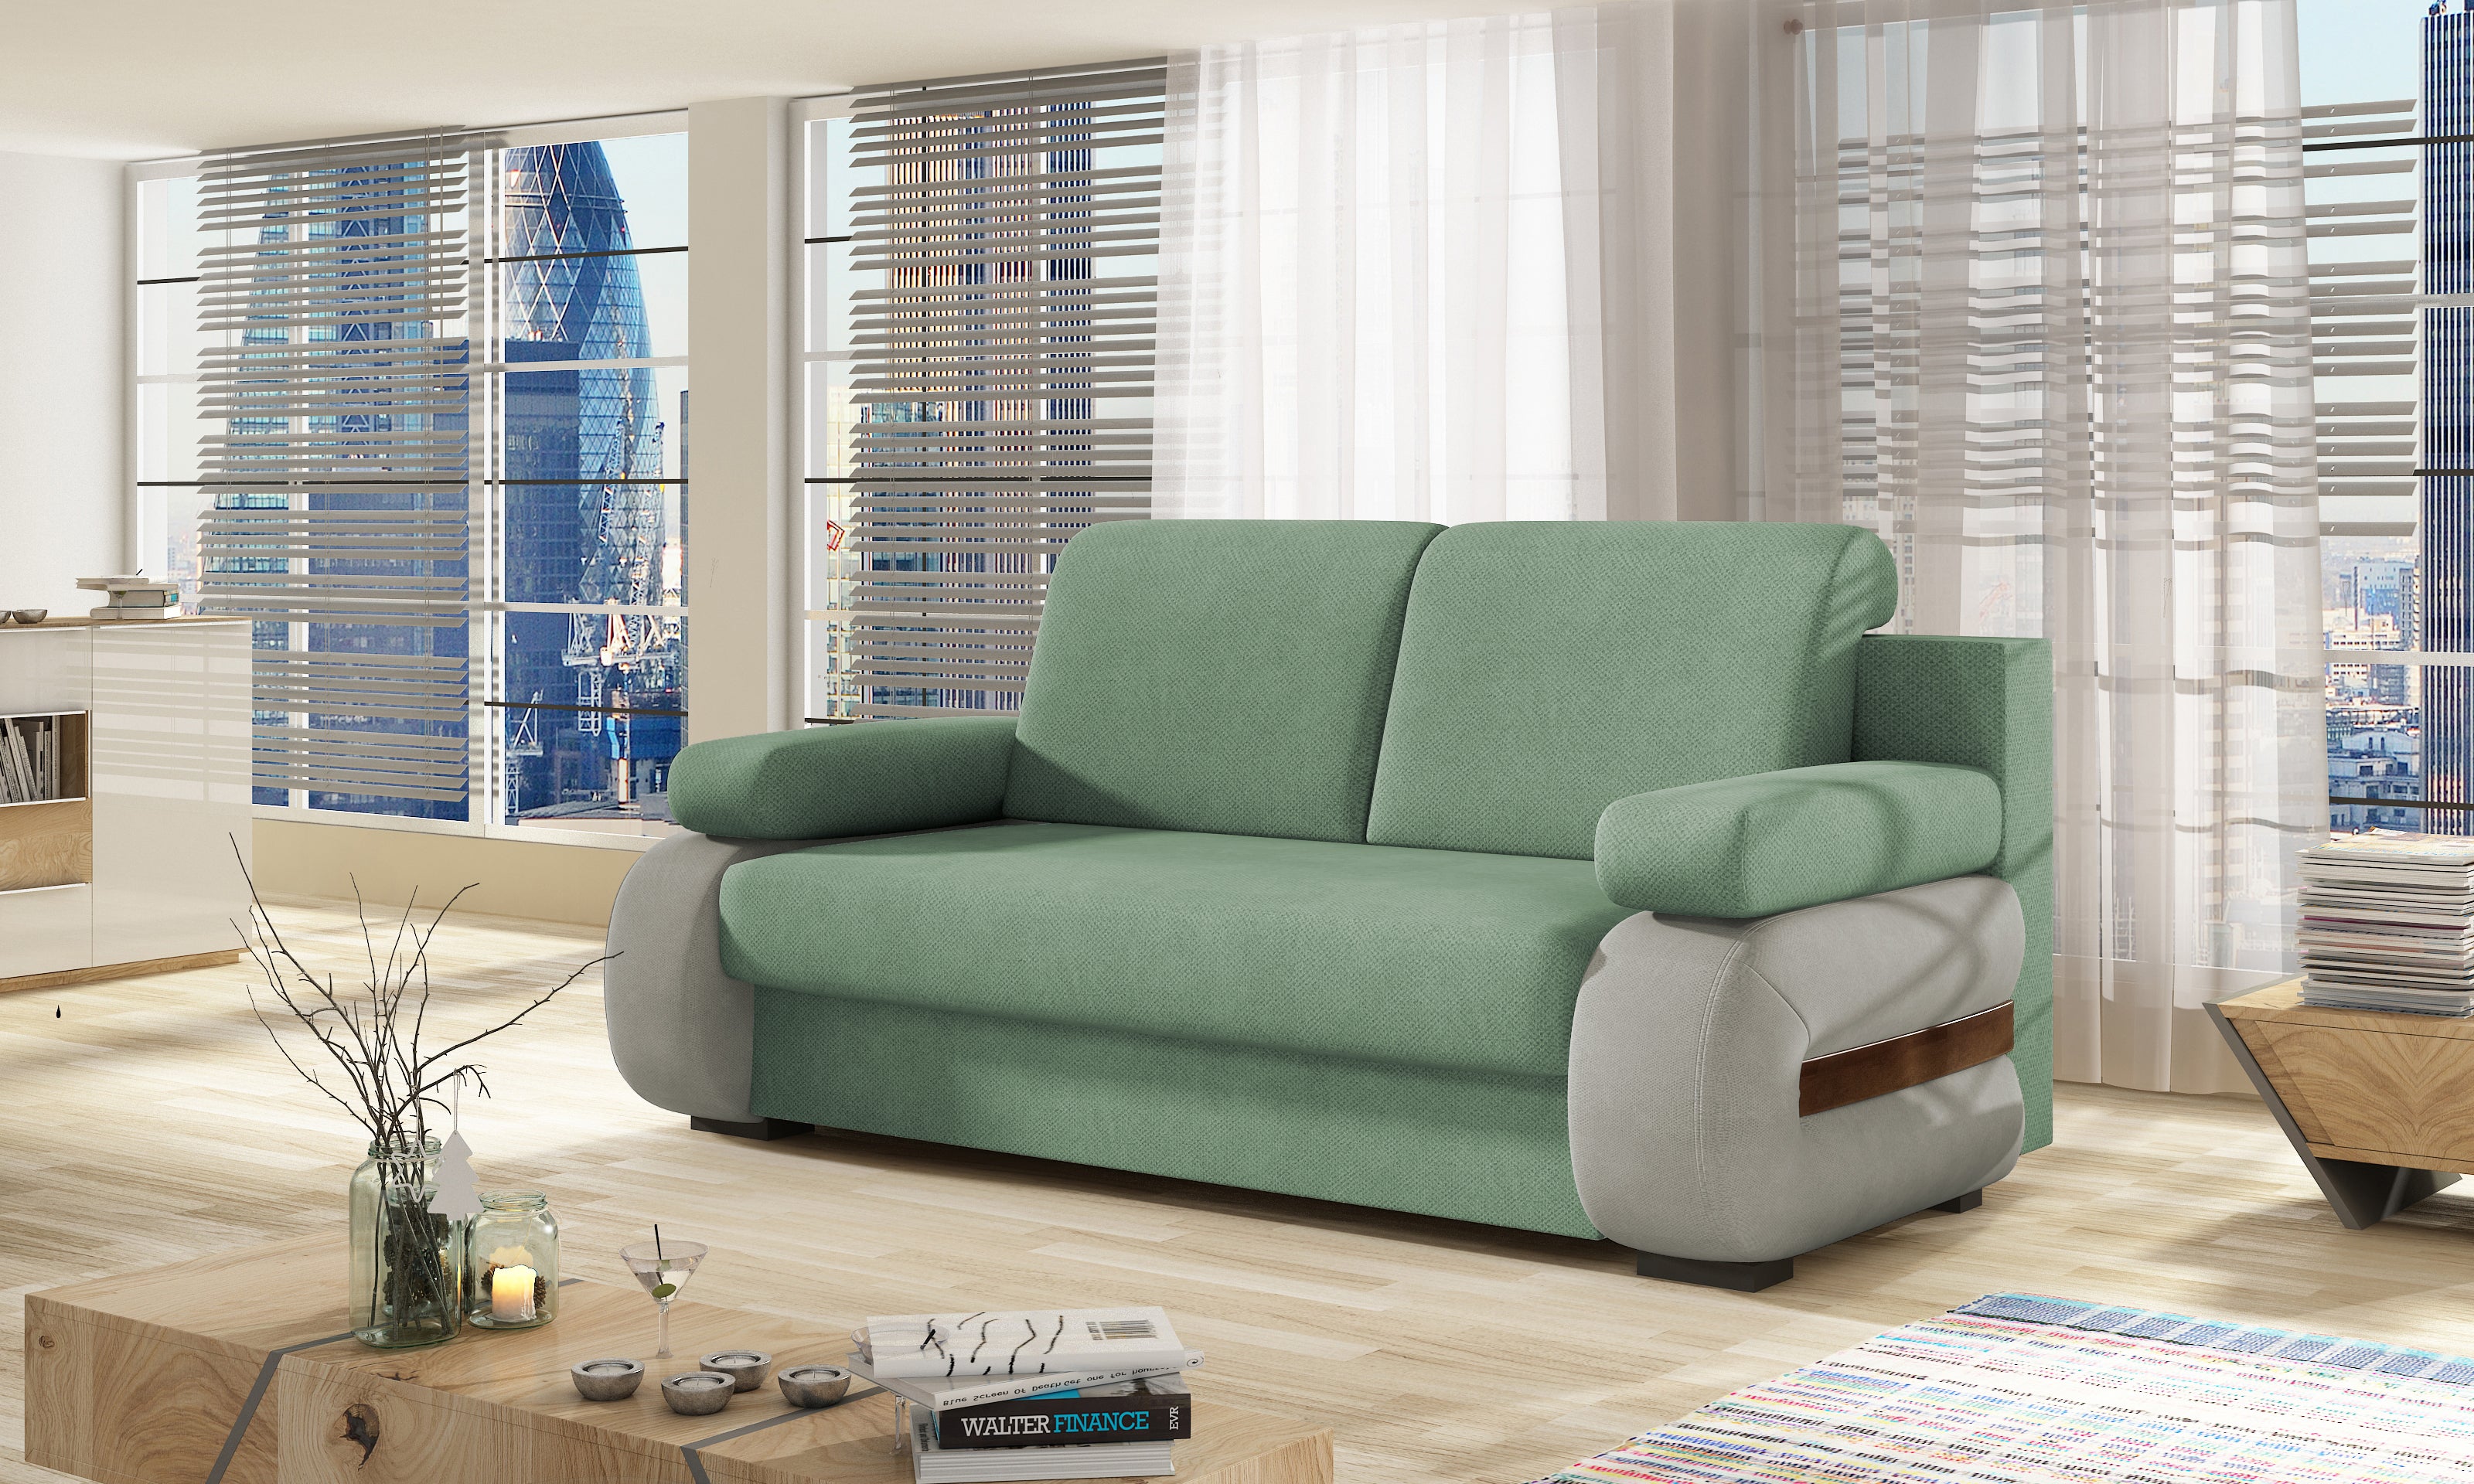 Canapé classique réinventé avec un design moderne-Laura